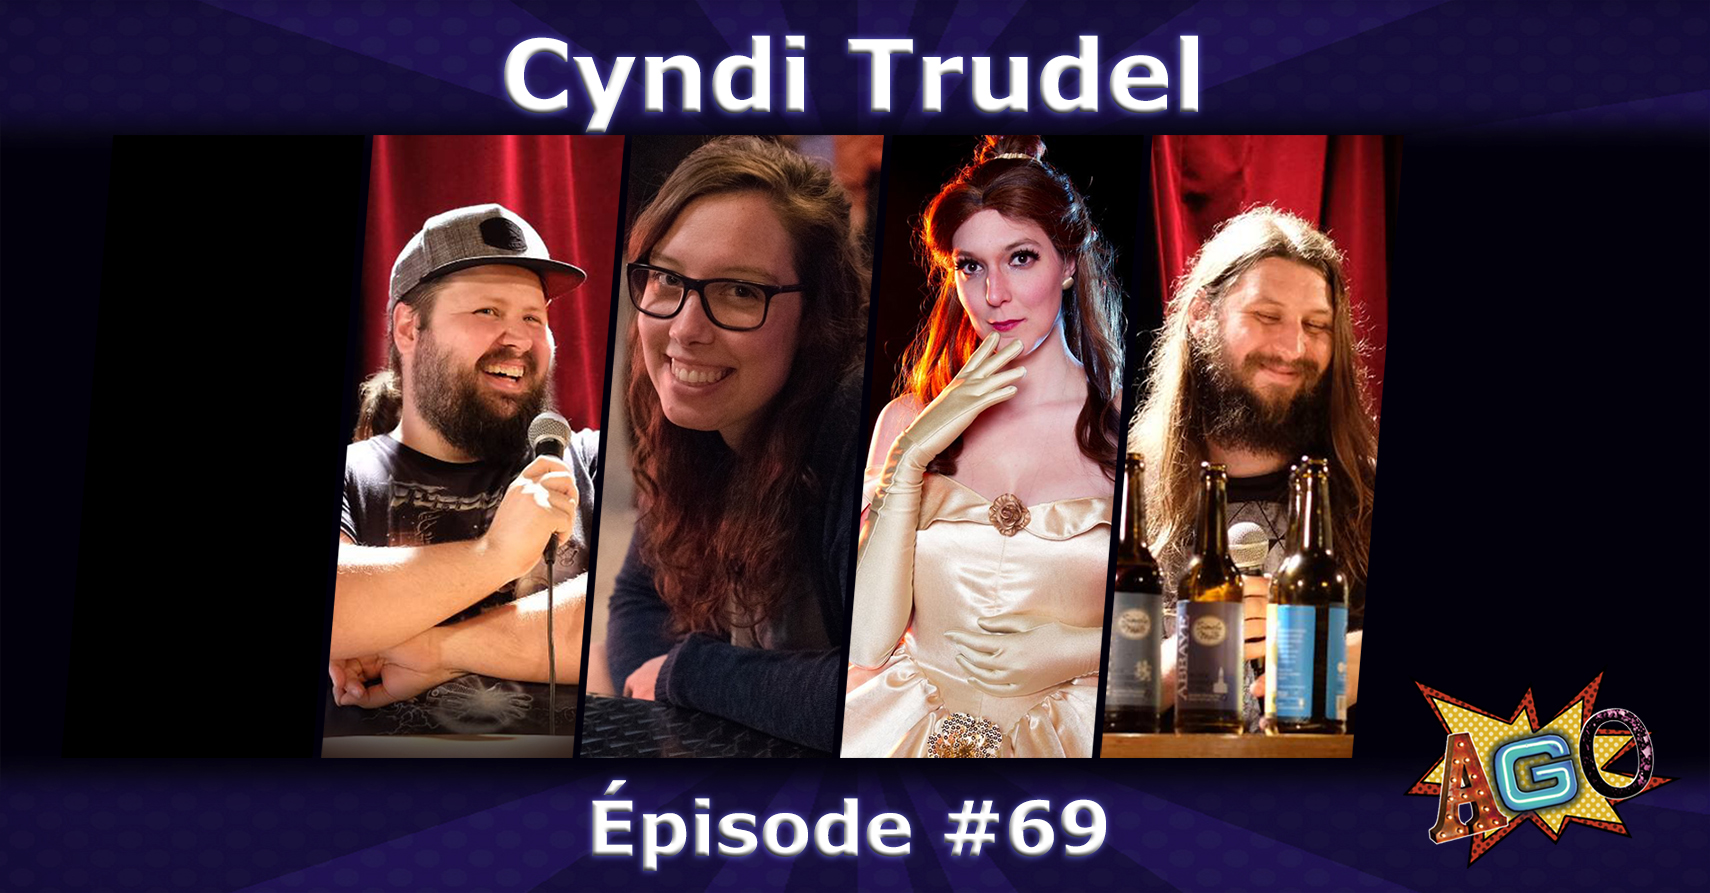 Épisode #69 - Cyndi Trudel